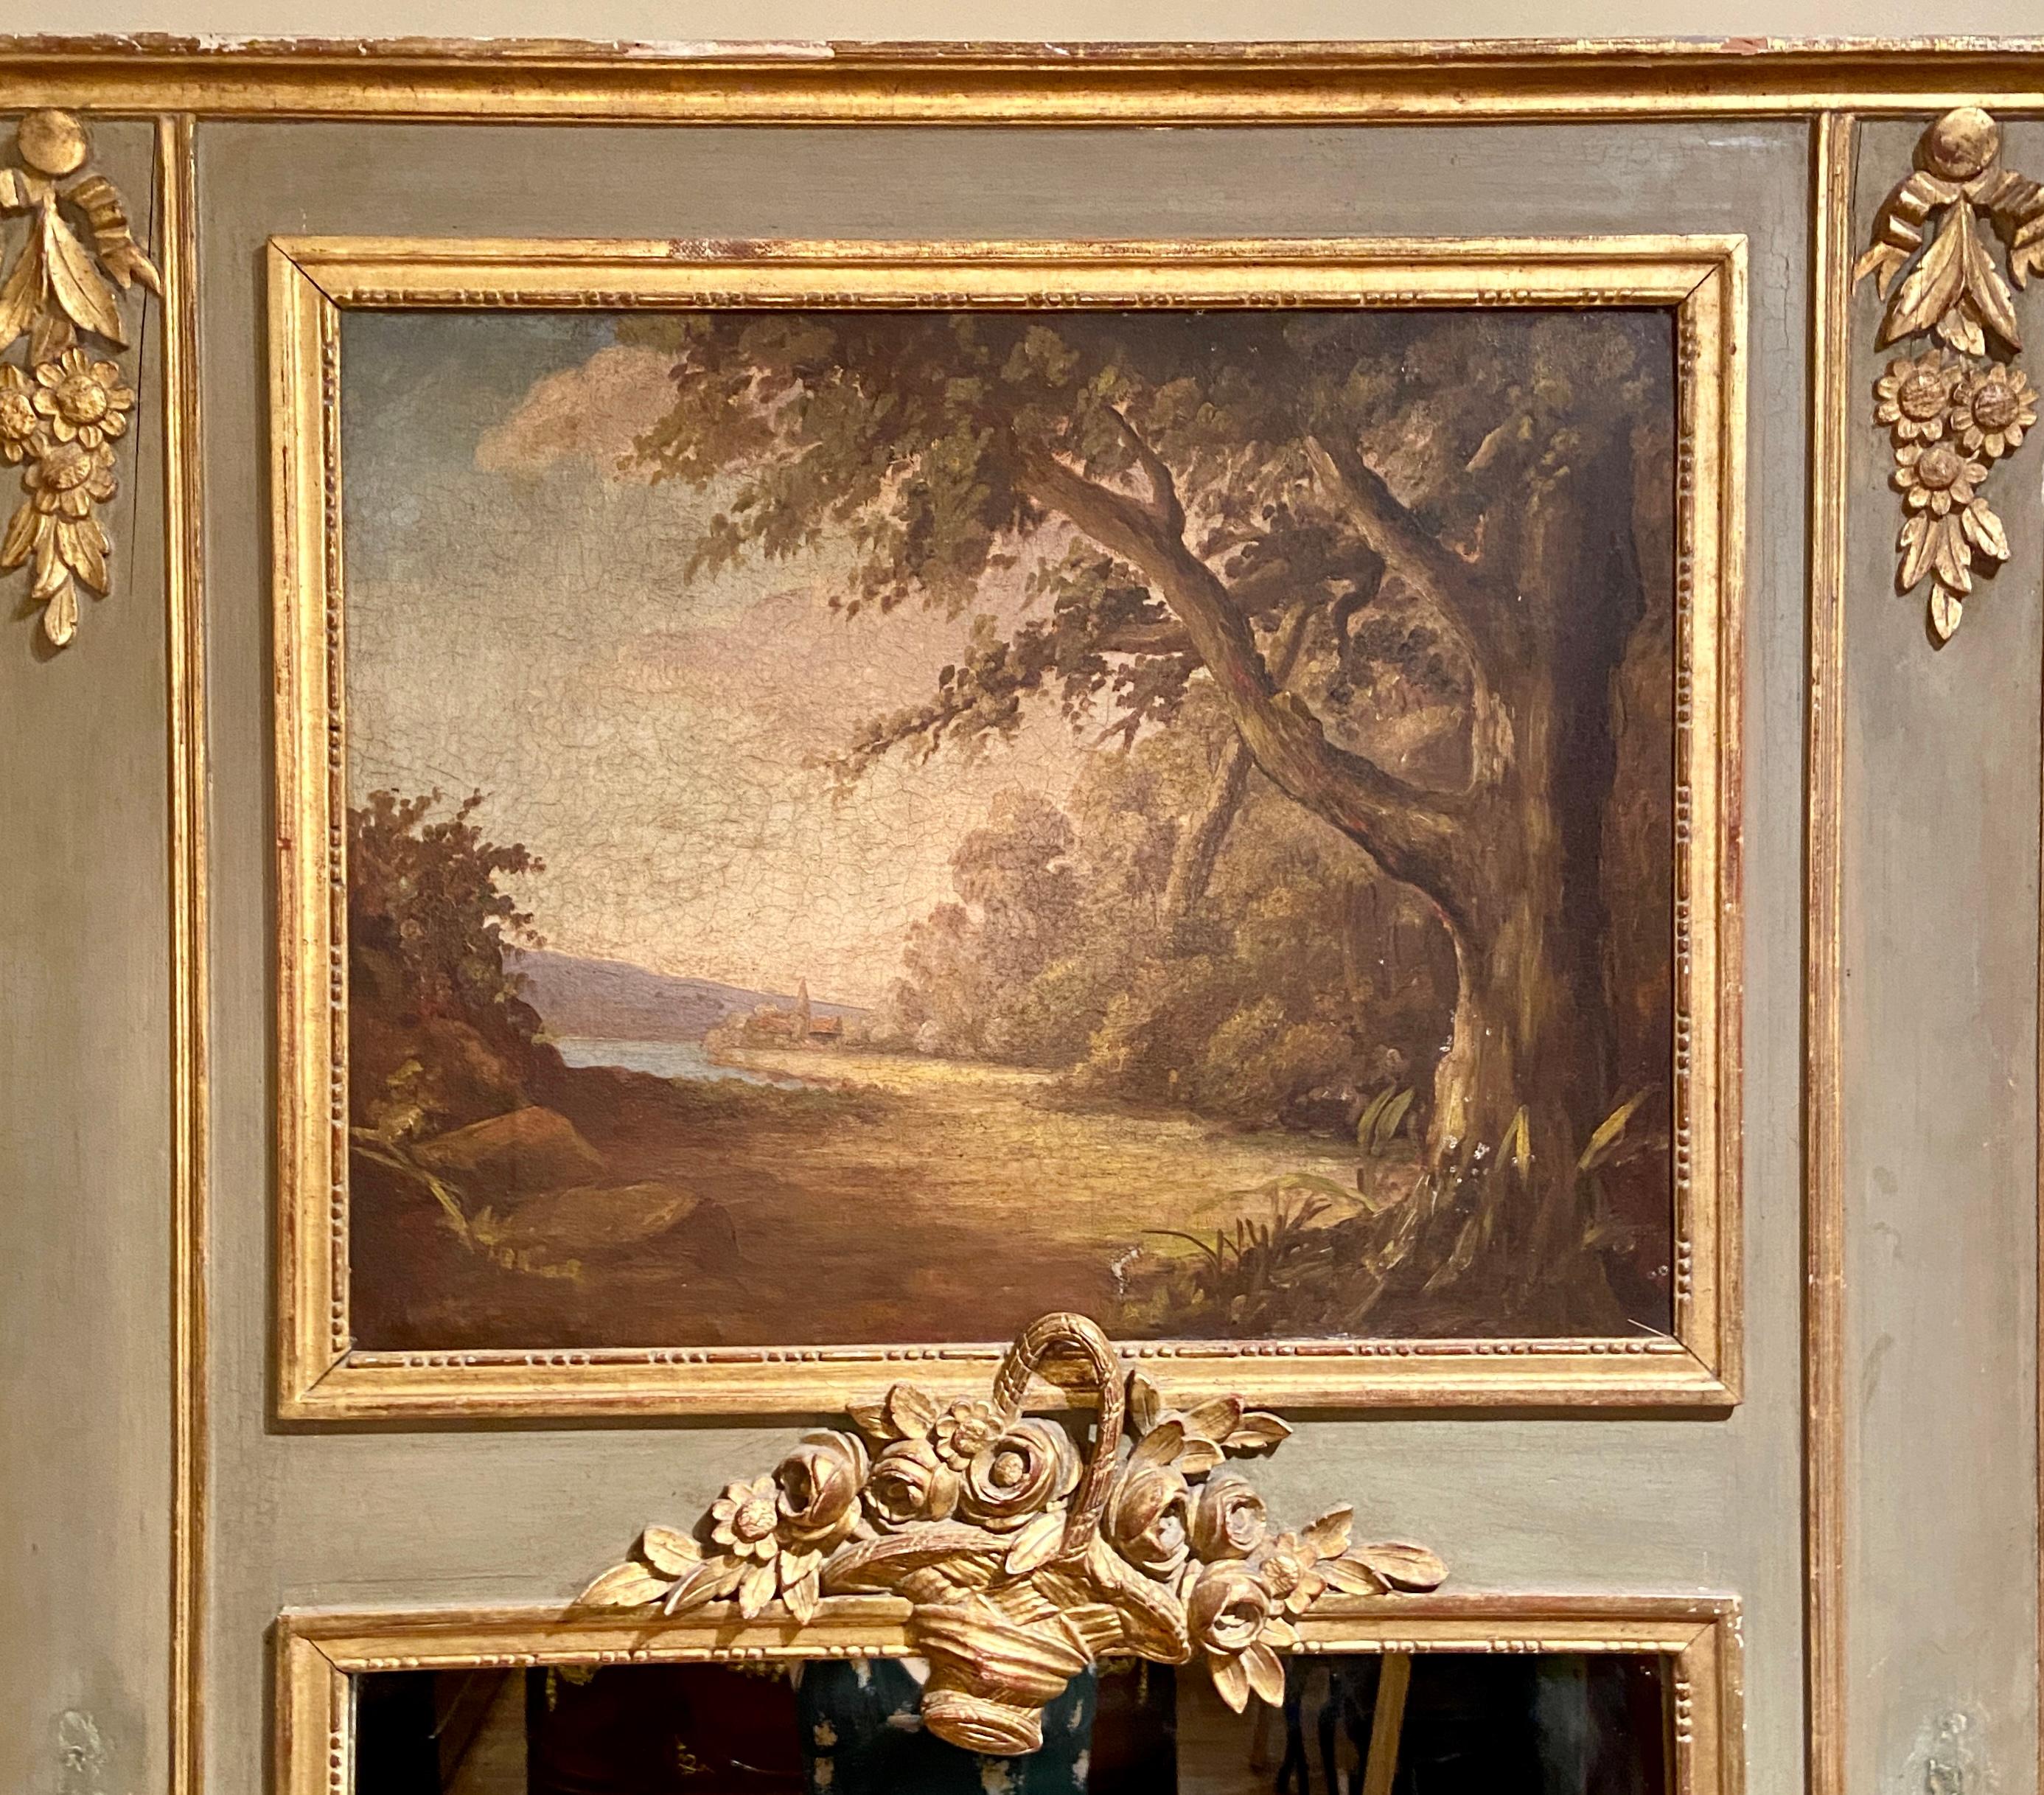 Antiker französischer Trumeau-Spiegel im Trumeau-Stil mit Landschaftszene, um 1880. Geschnitztes Holz, salbeigrün lackiert mit feinen Golddetails.
Dieser schöne Trumeau-Spiegel hat eine weiche, angenehme Farbpalette und eine feine Komposition.